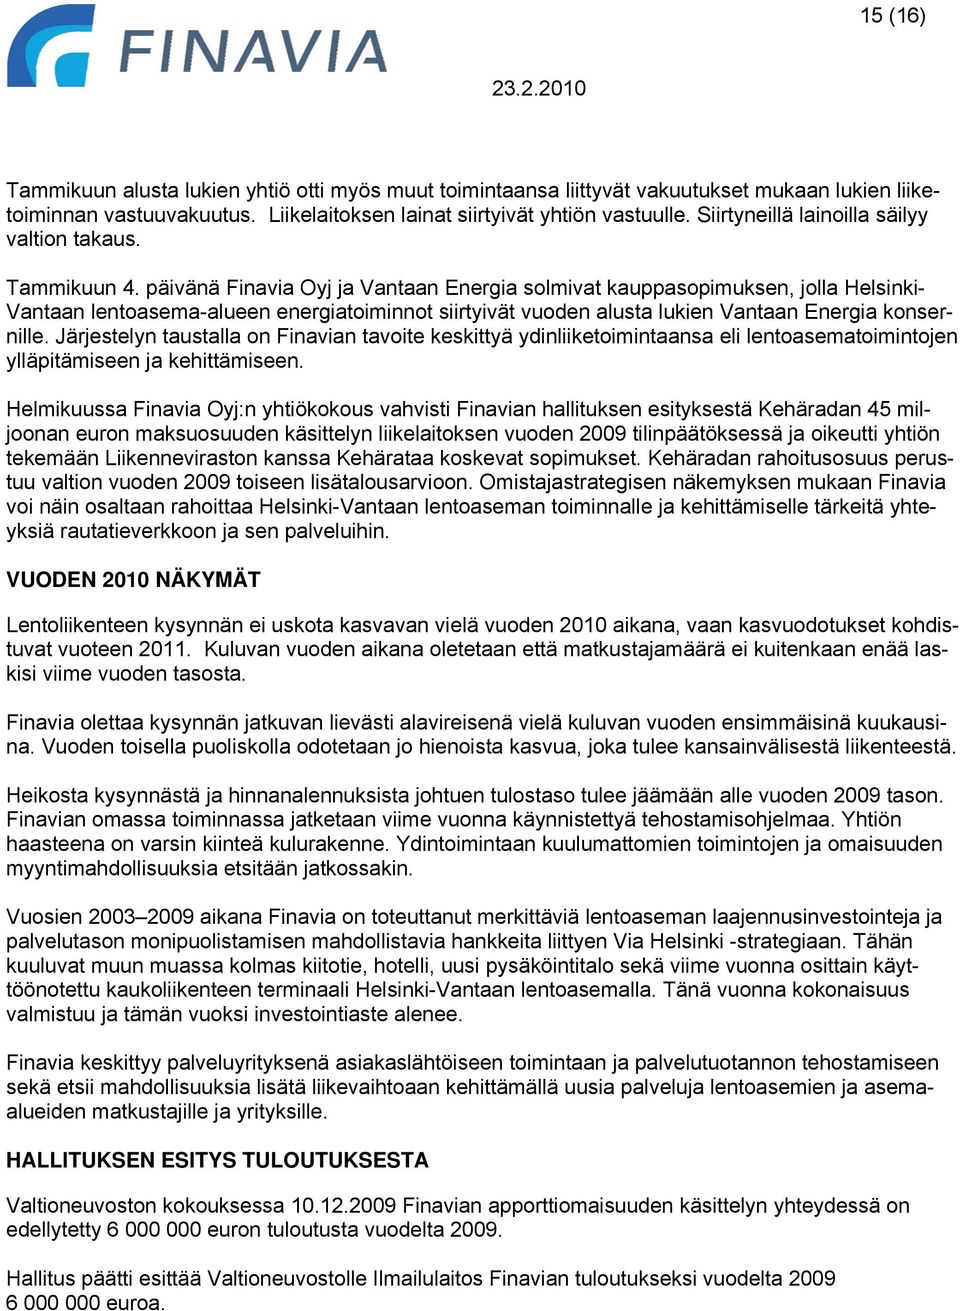 päivänä Finavia Oyj ja Vantaan Energia solmivat kauppasopimuksen, jolla Helsinki- Vantaan lentoasema-alueen energiatoiminnot siirtyivät vuoden alusta lukien Vantaan Energia konsernille.